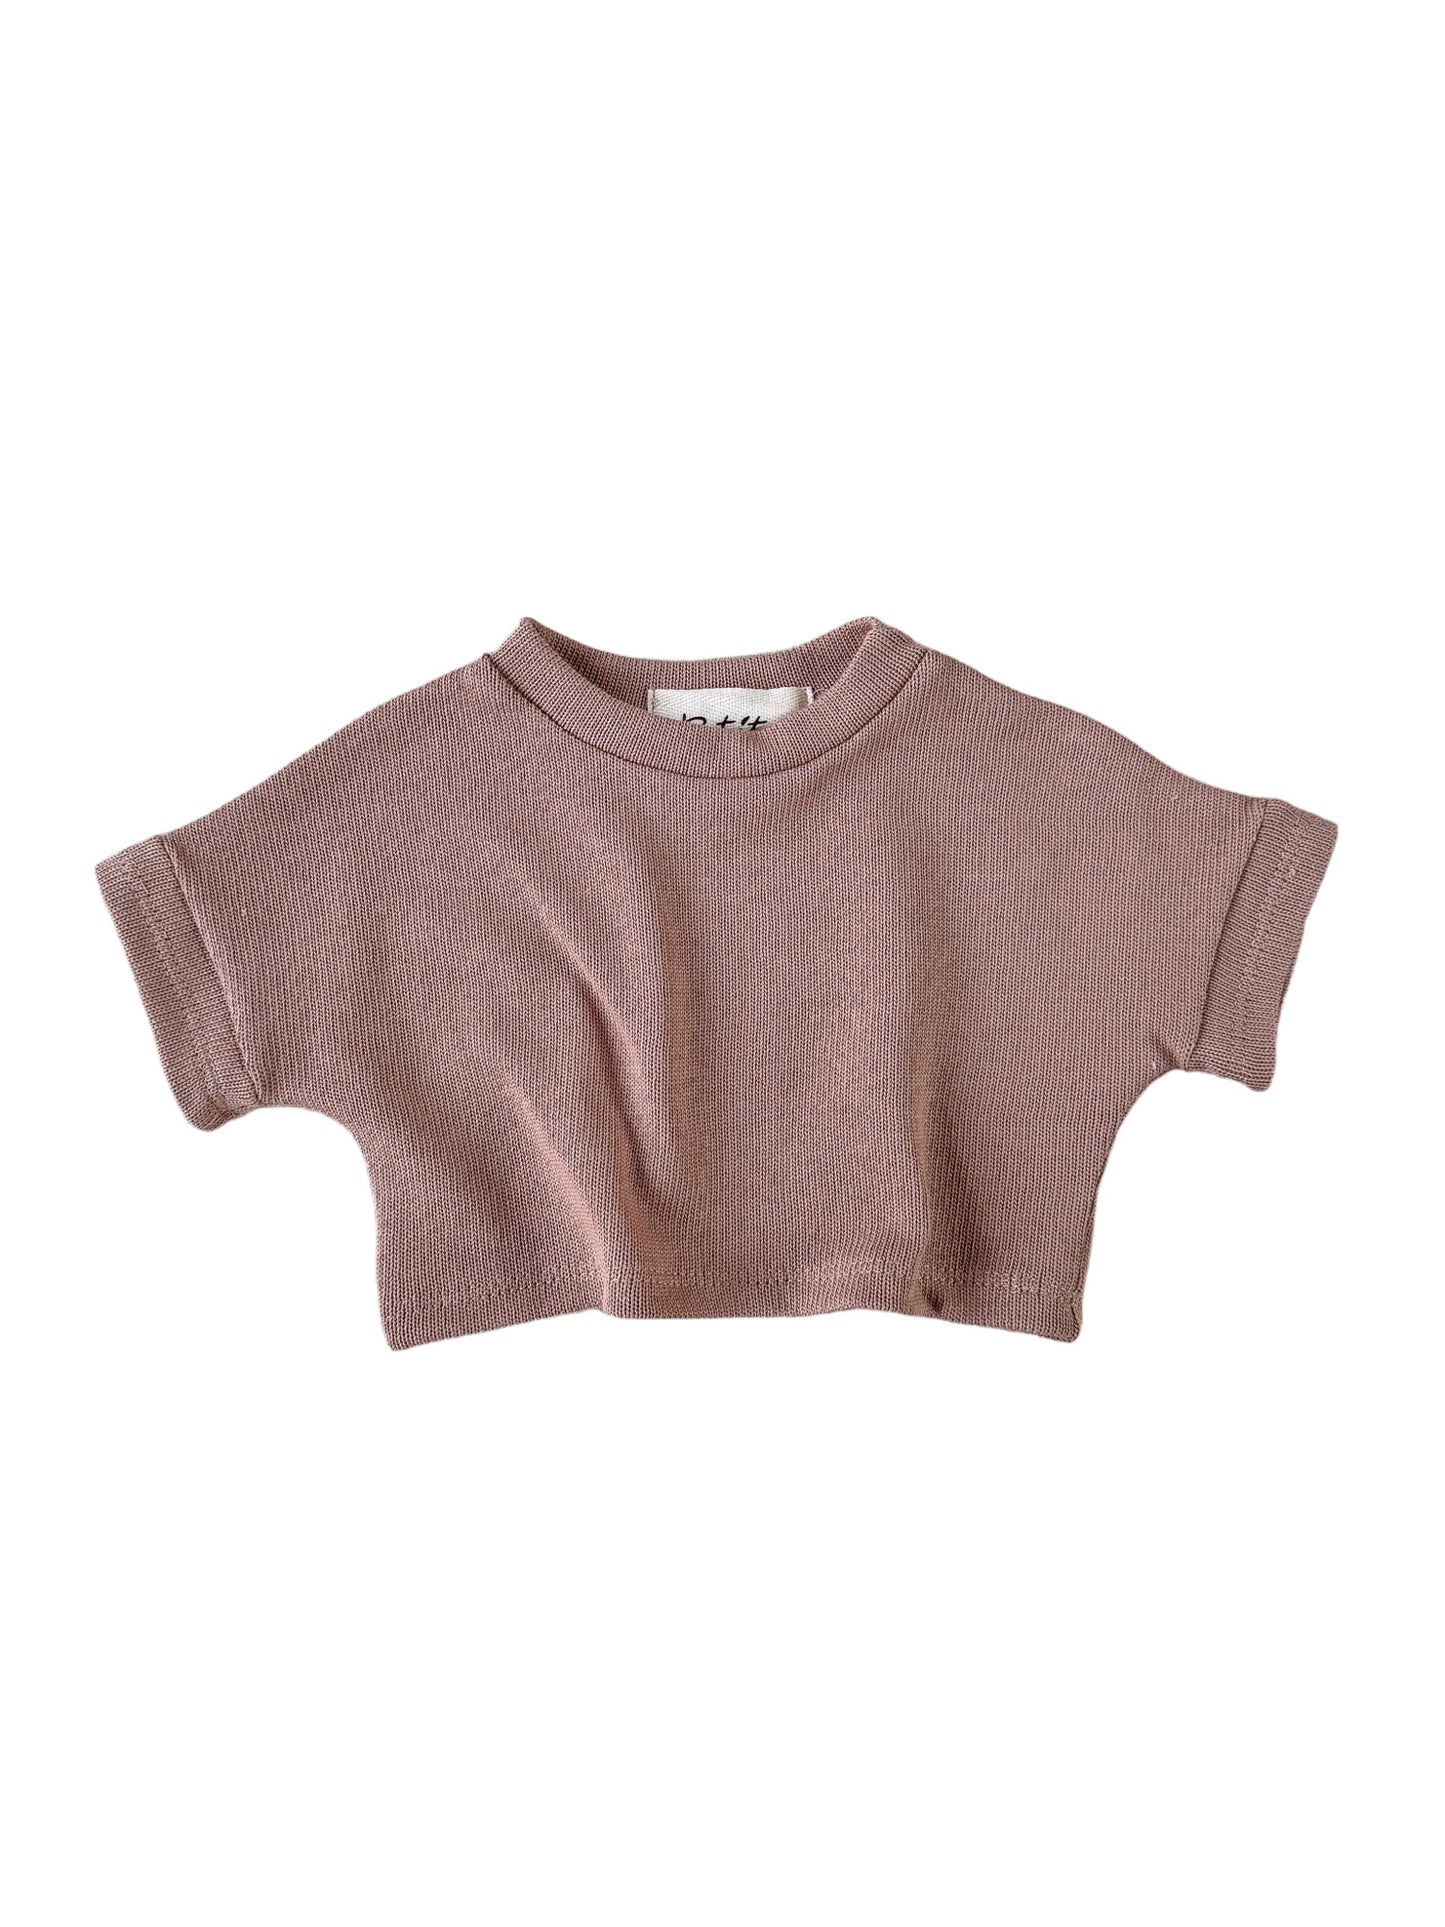 Knit t-shirt / dark beige